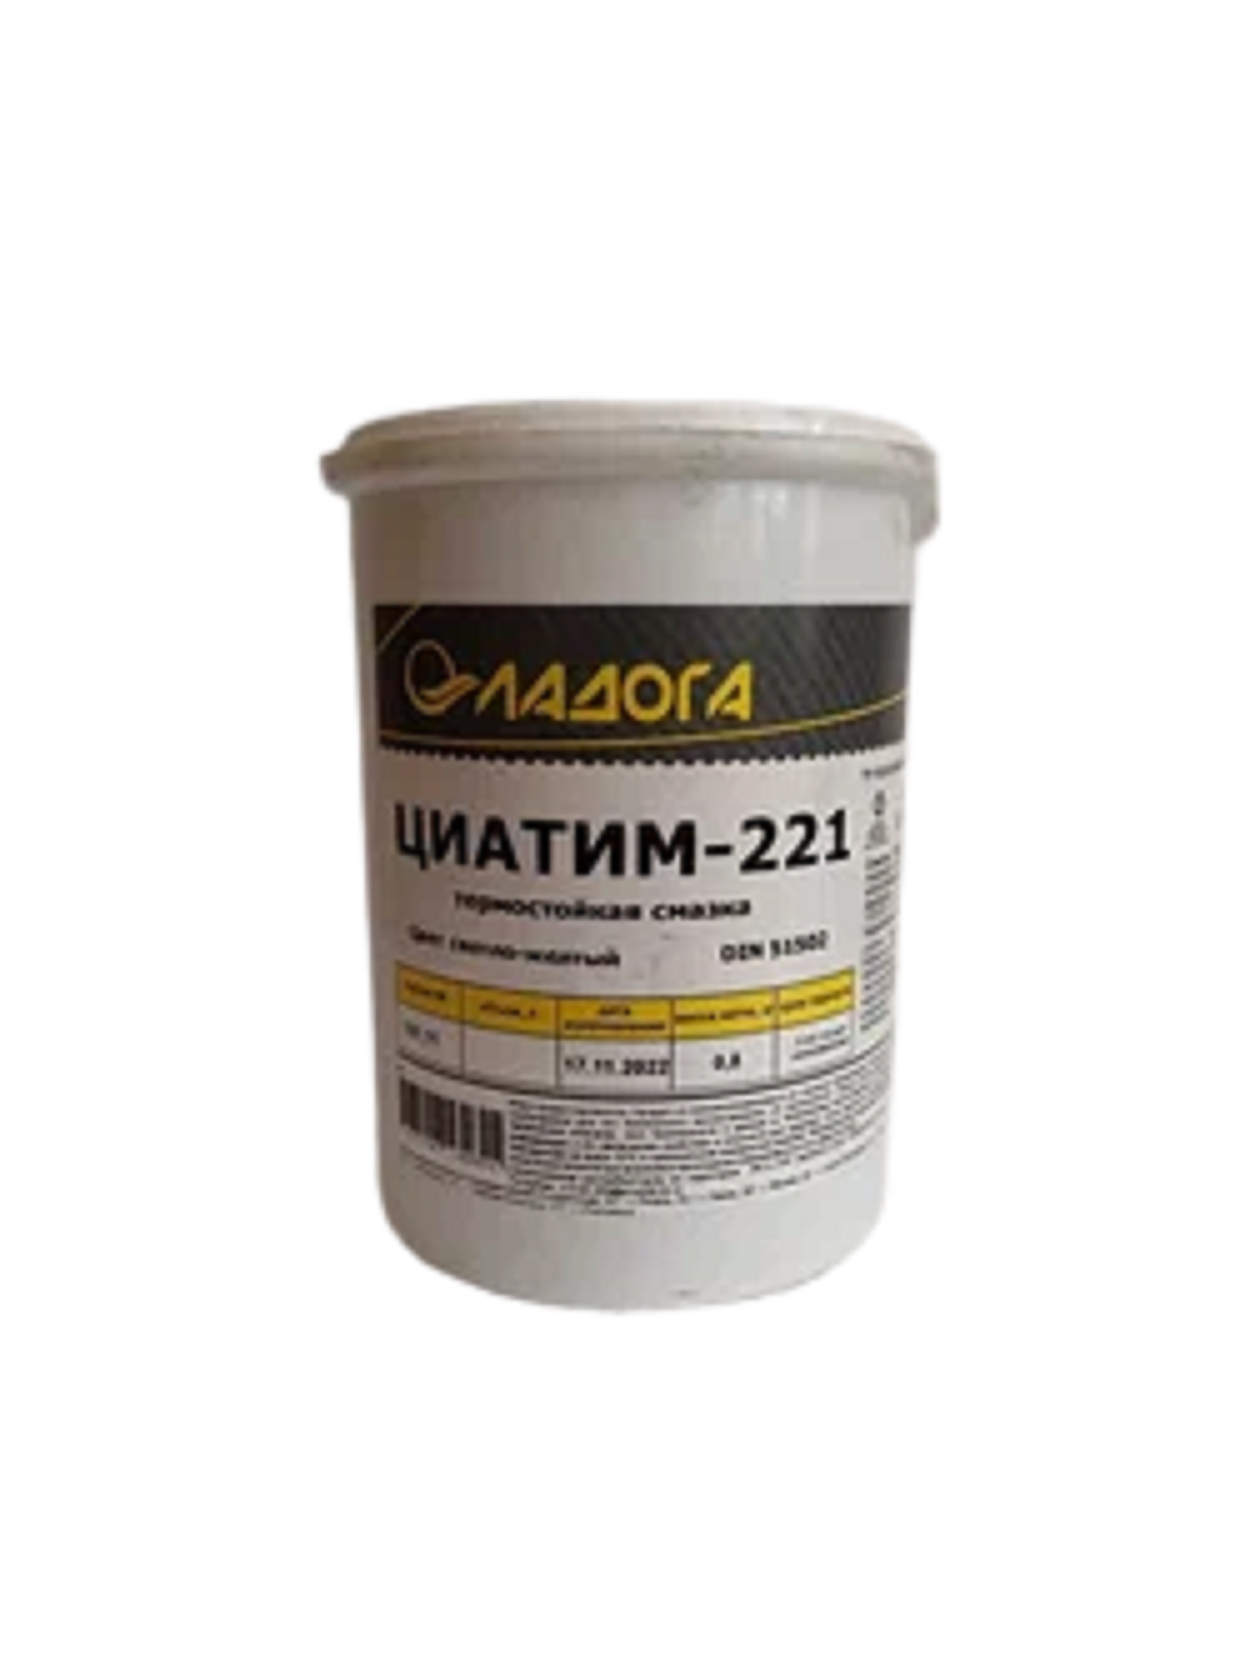 Смазка Ладога Циатим-221 0,8 кг смазка 30 г силикон универсальная masterprof ис 131526